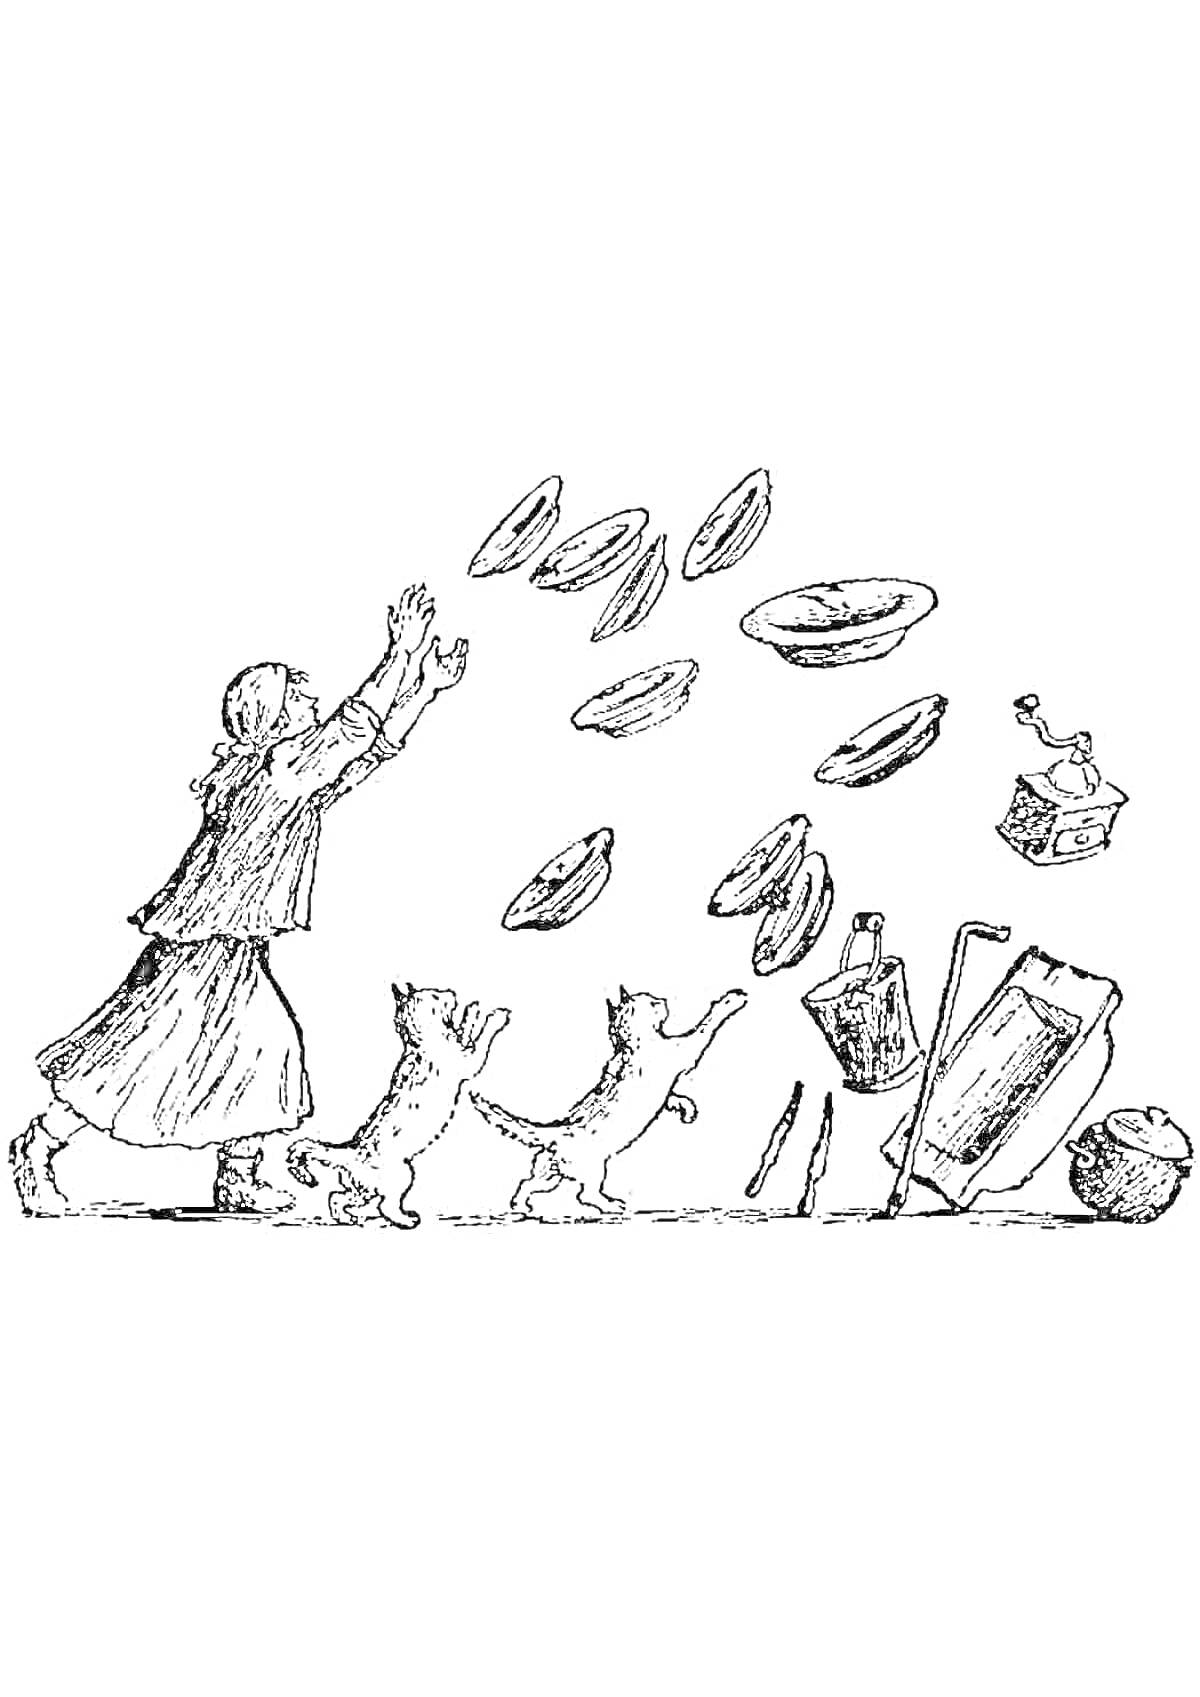 Женщина с двумя собаками, пытающаяся поймать улетающую посуду, включающую тарелки, чайник, бутылку, кувшин и ложку